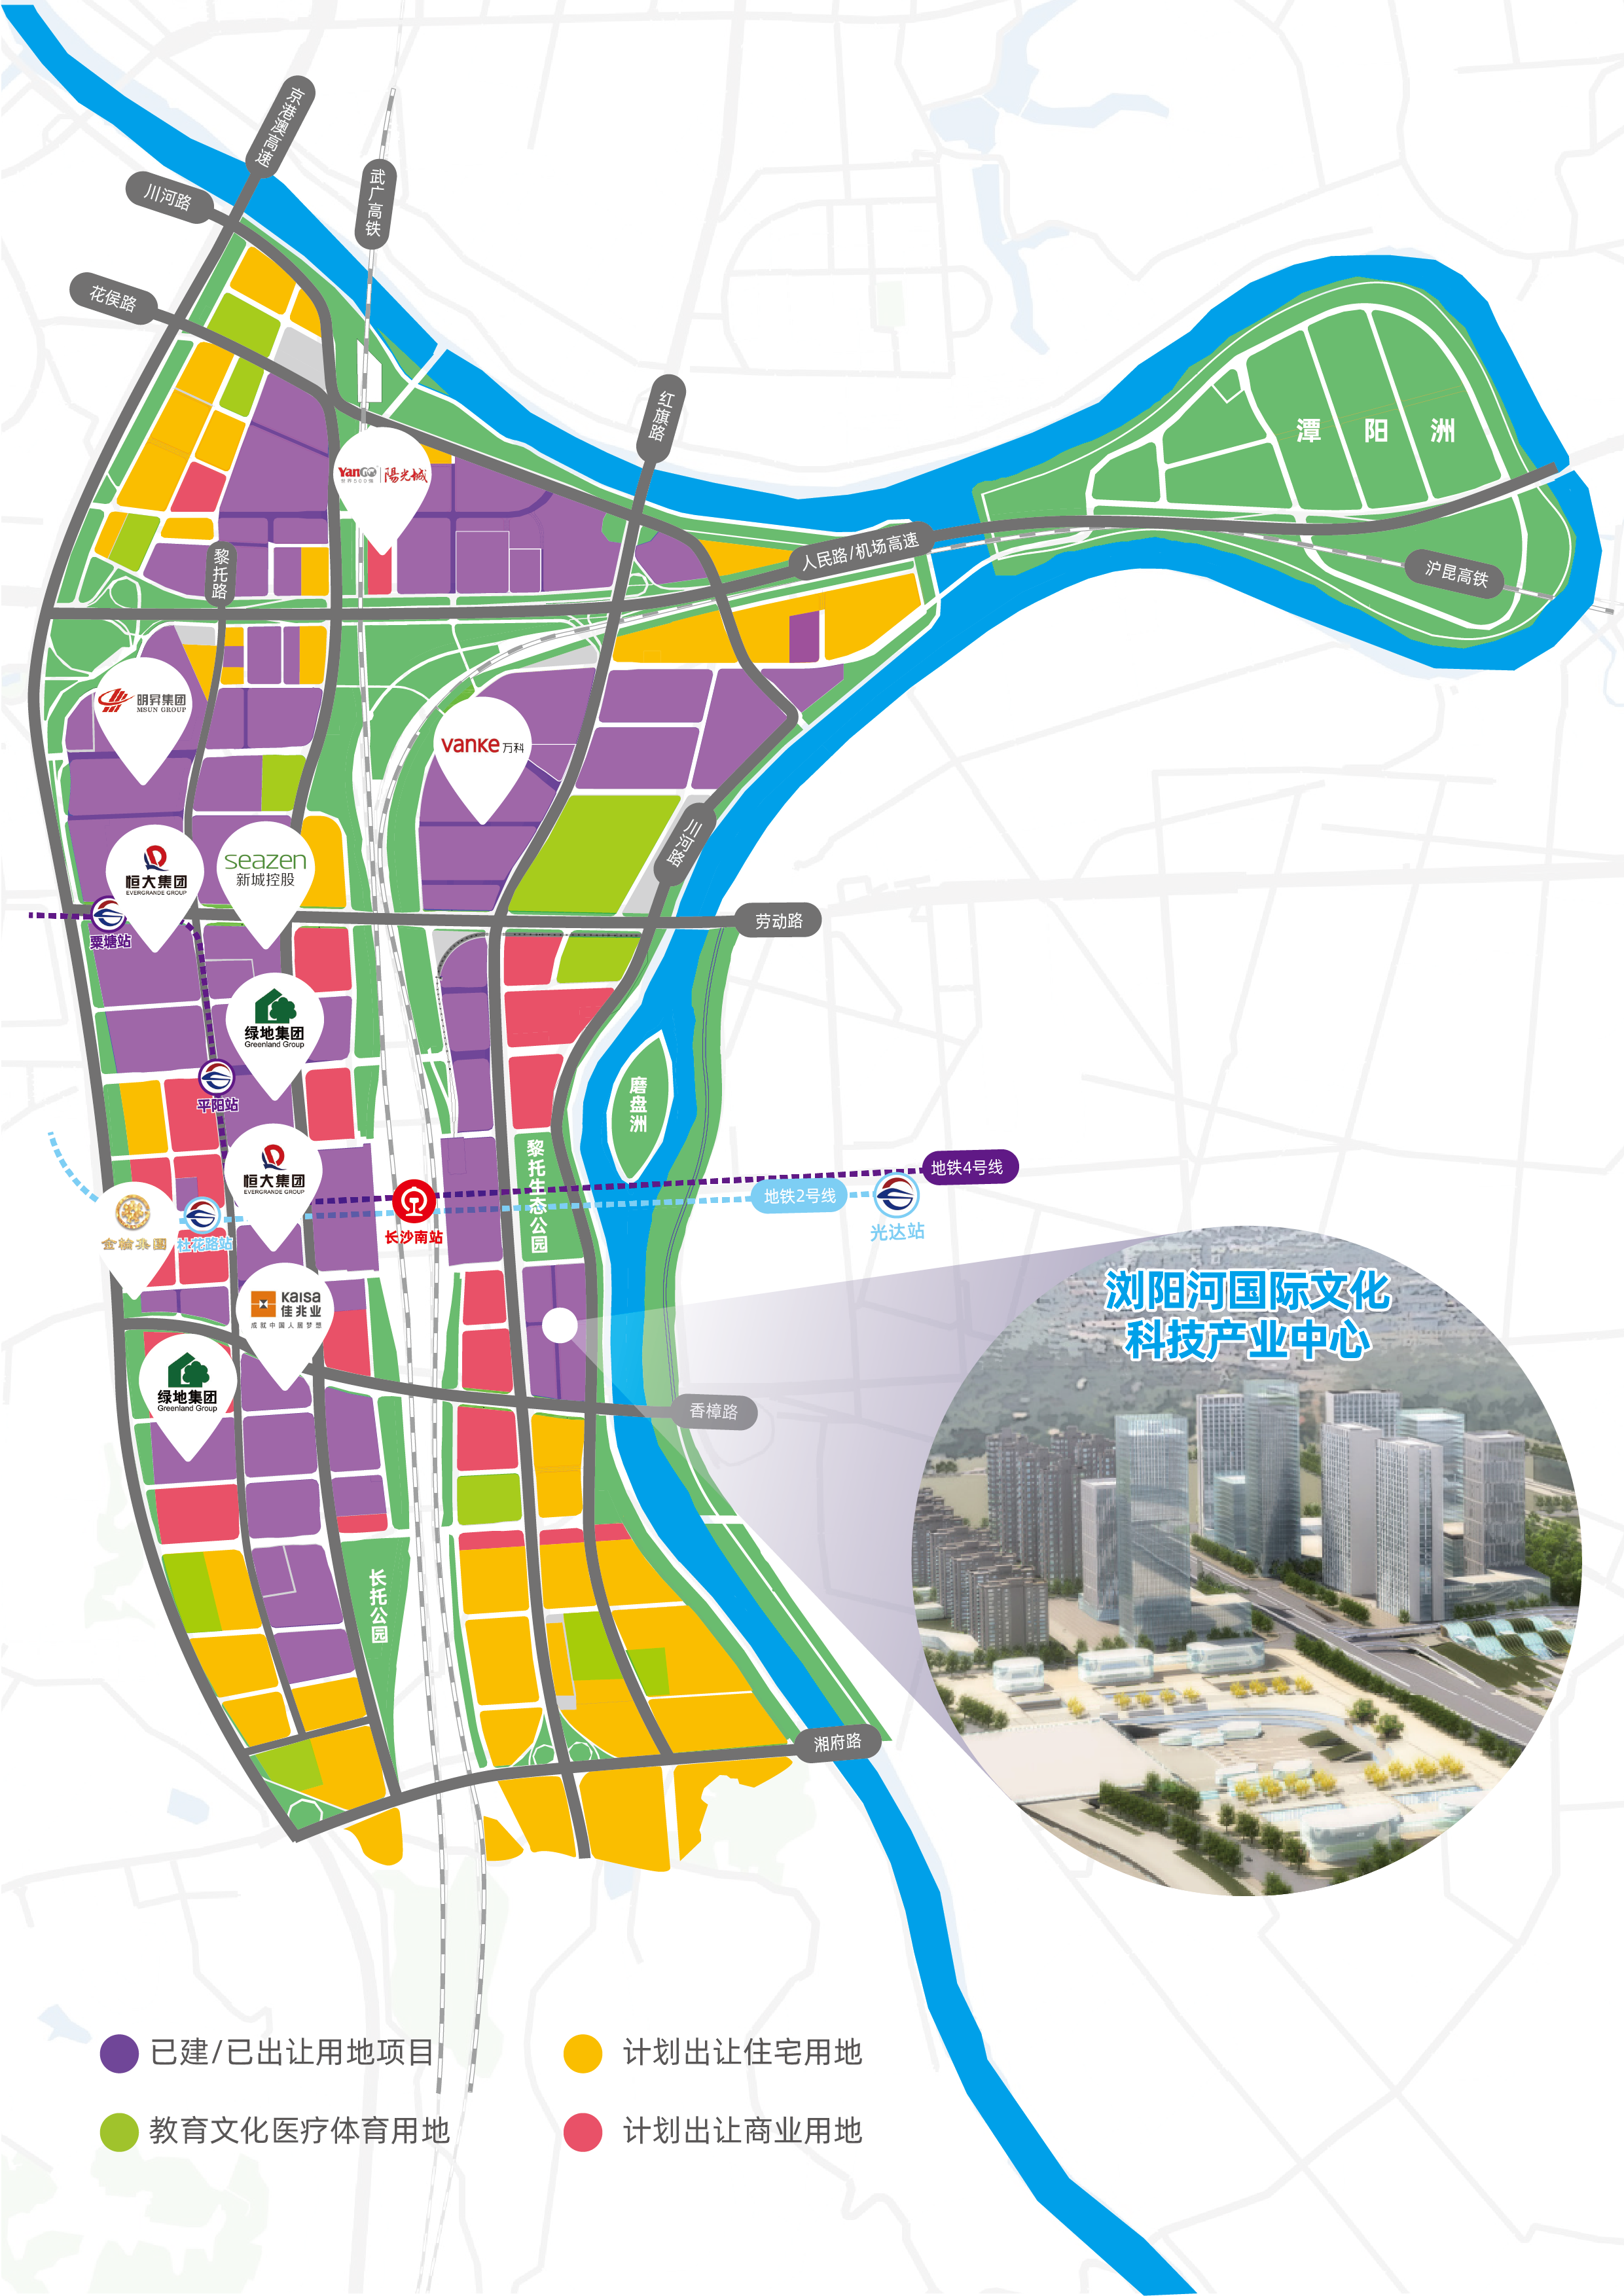 “浏阳河国际文化科技产业中心”区位图。